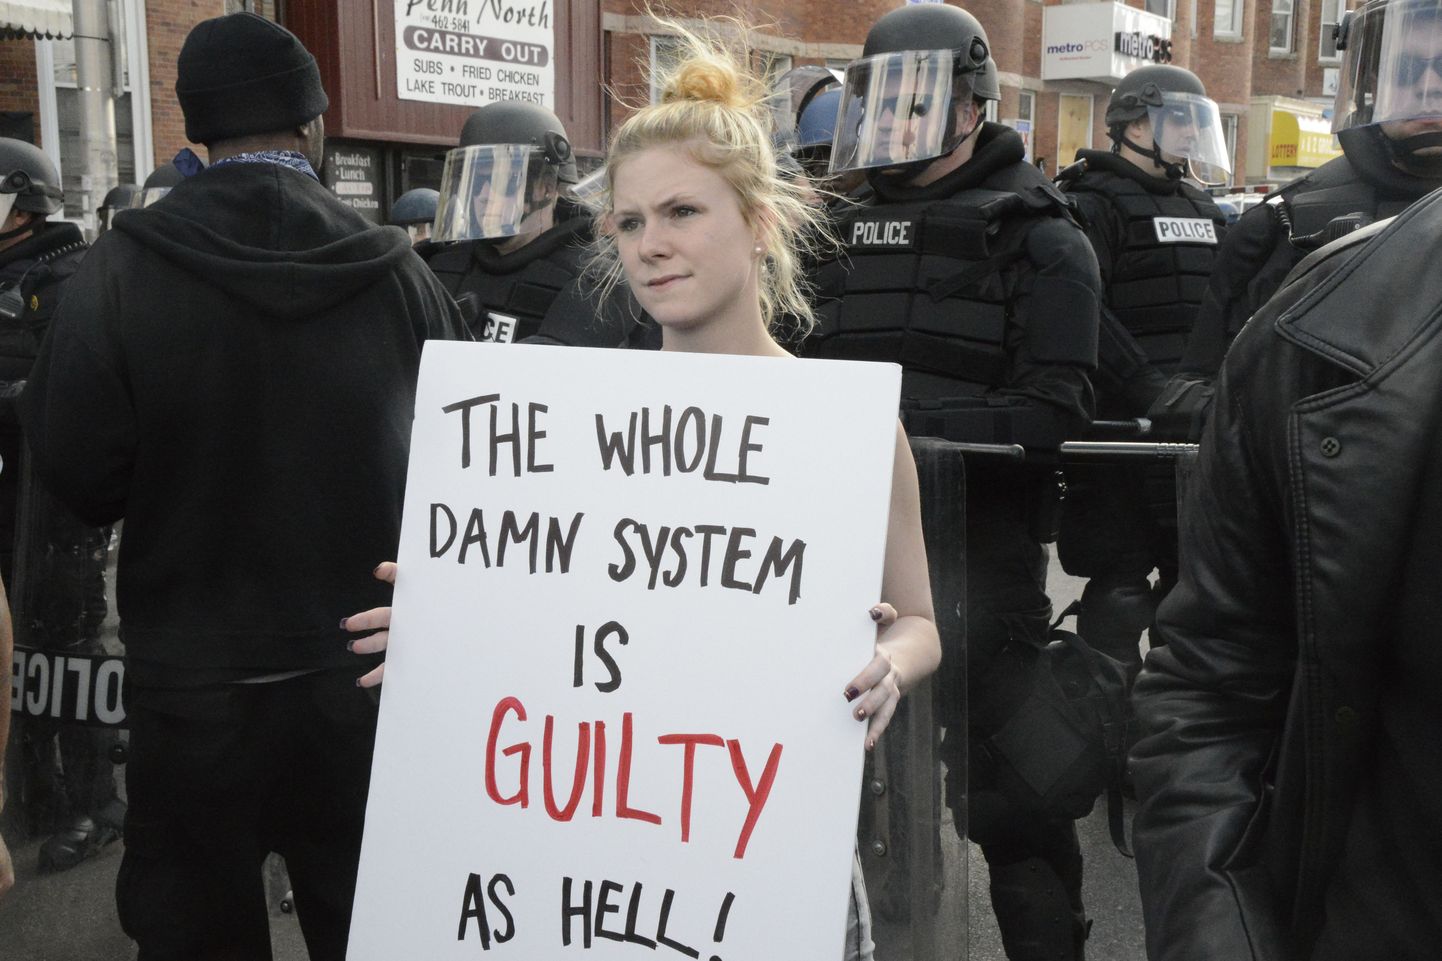 Protestija Baltimore'is plakatiga «kogu süsteem on pagana süüdi».